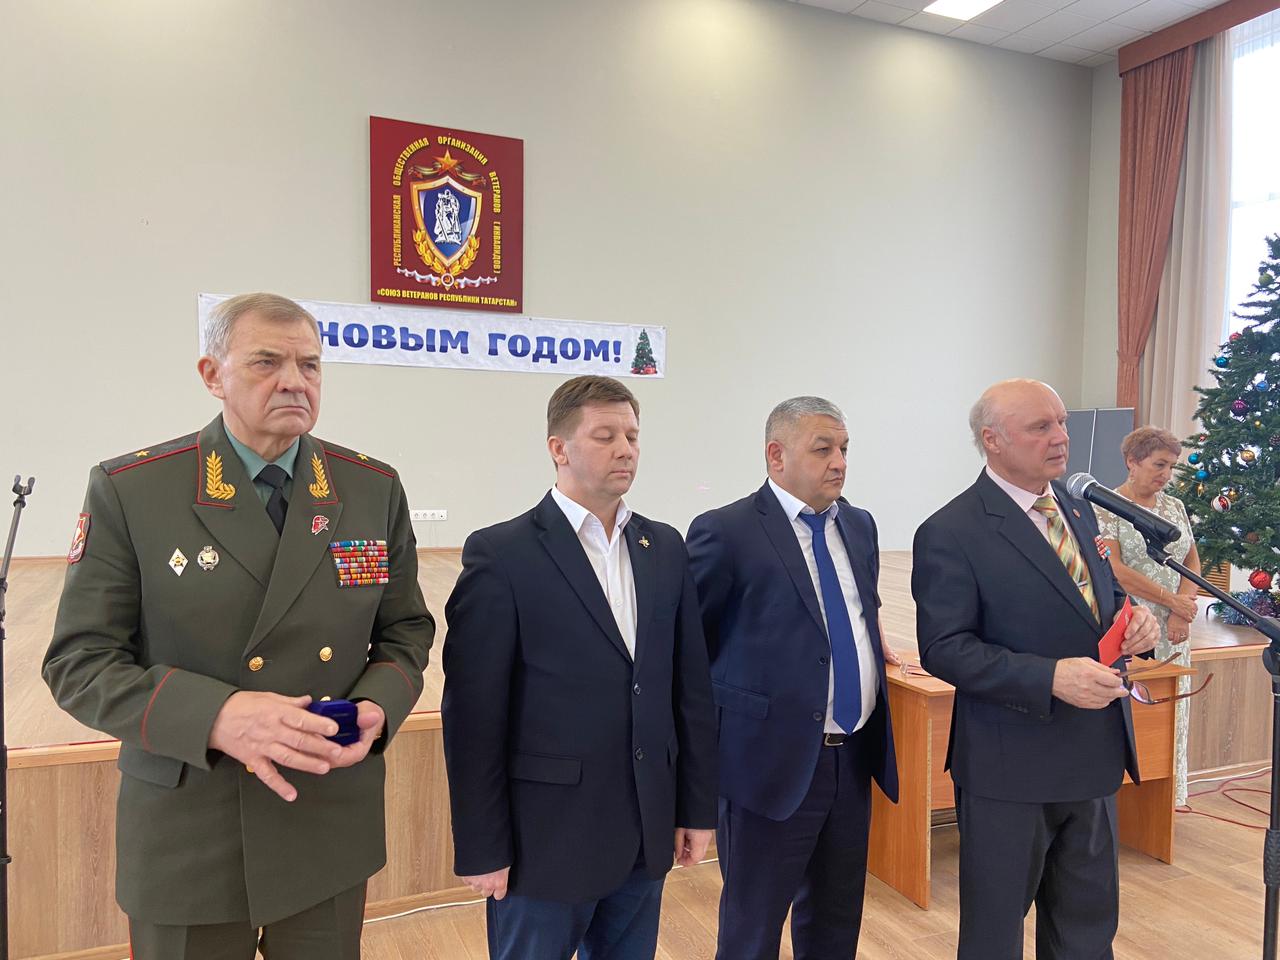 Председатель Союза ветеранов Татарстана наградил почетным нагрудным знаком руководителя регионального отделения МОО «МААР» по Республике Татарстан